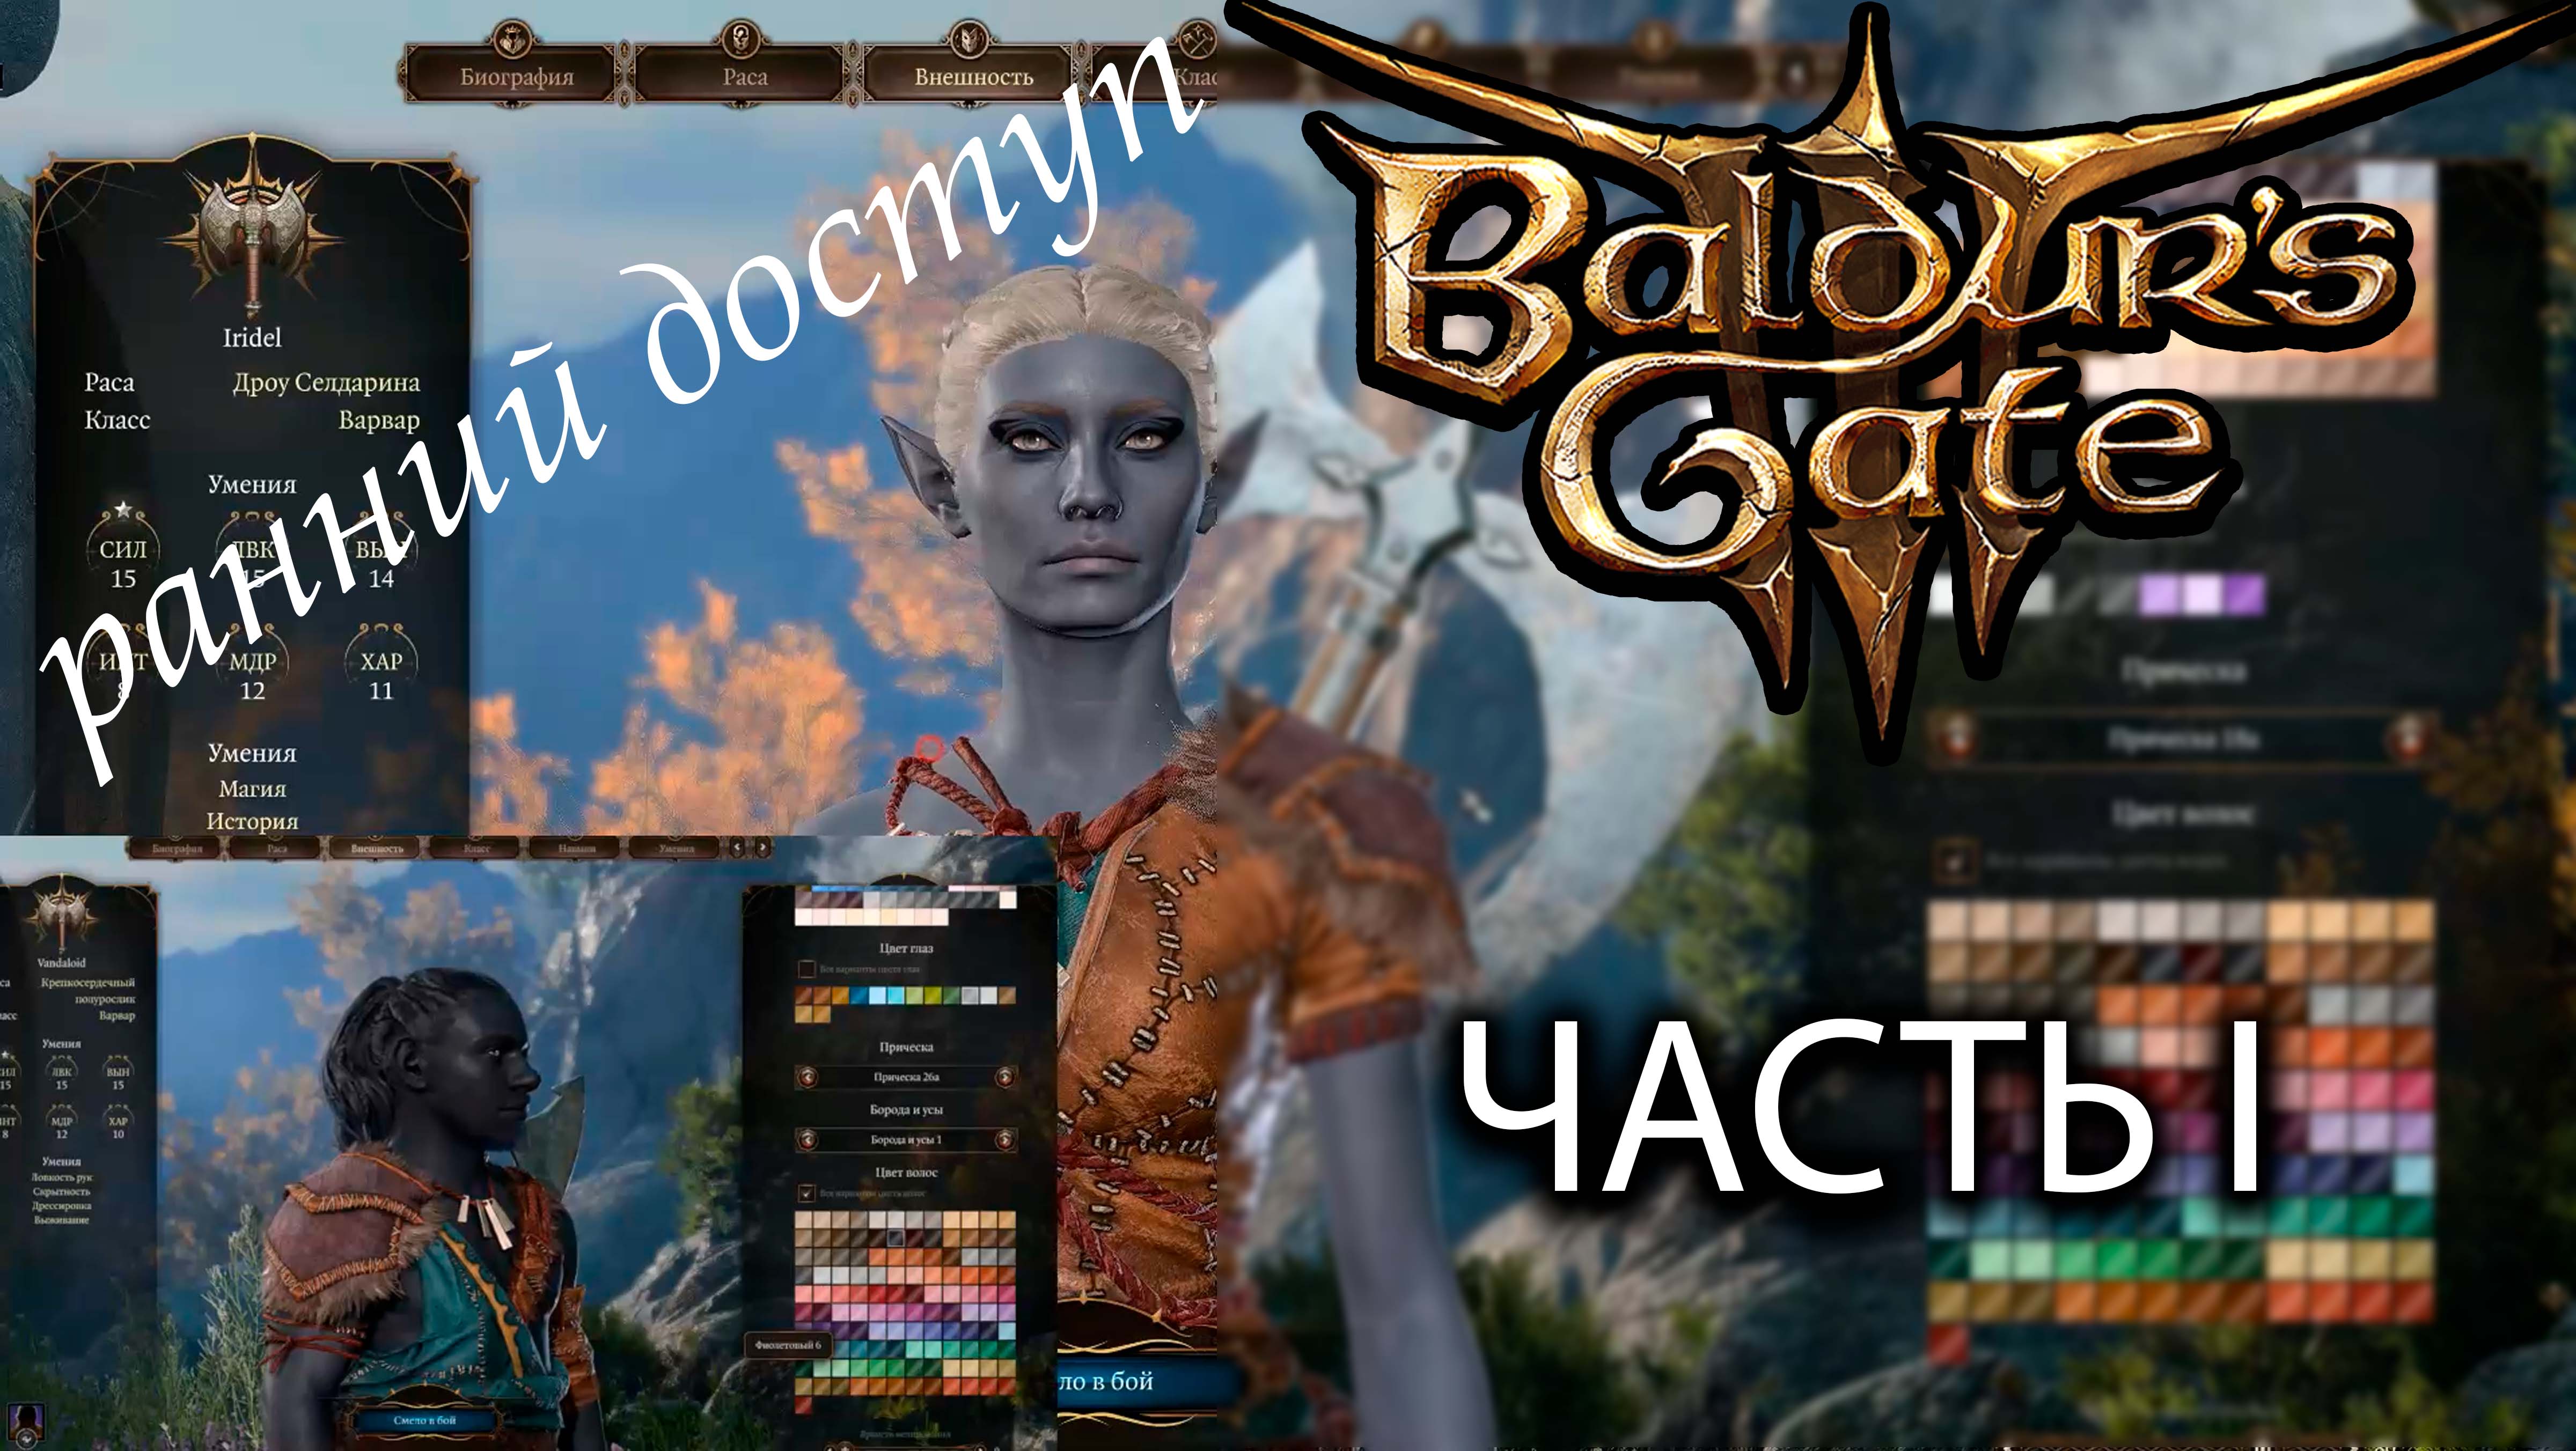 Играем в Baldur’s Gate 3 ранний доступ / ЧАСТЬ 1 - первый запуск, настройки игры, создание персонажа